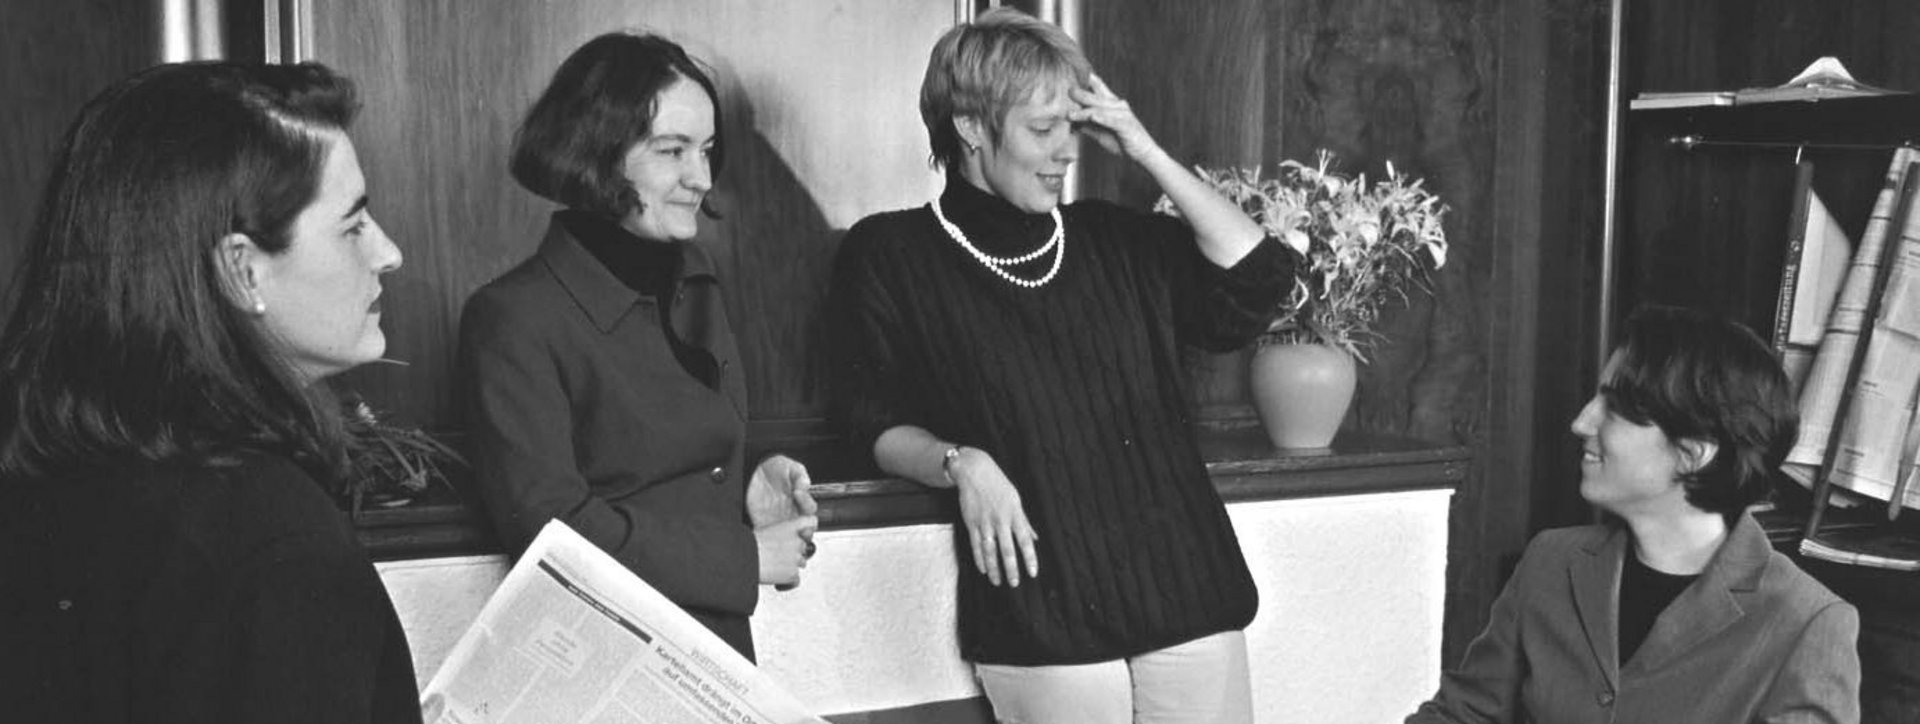 Ein schwarz-weiß Foto mit 4 Frauen, die sich unterhalten. 3 von ihnen stehen, eine sitzt.